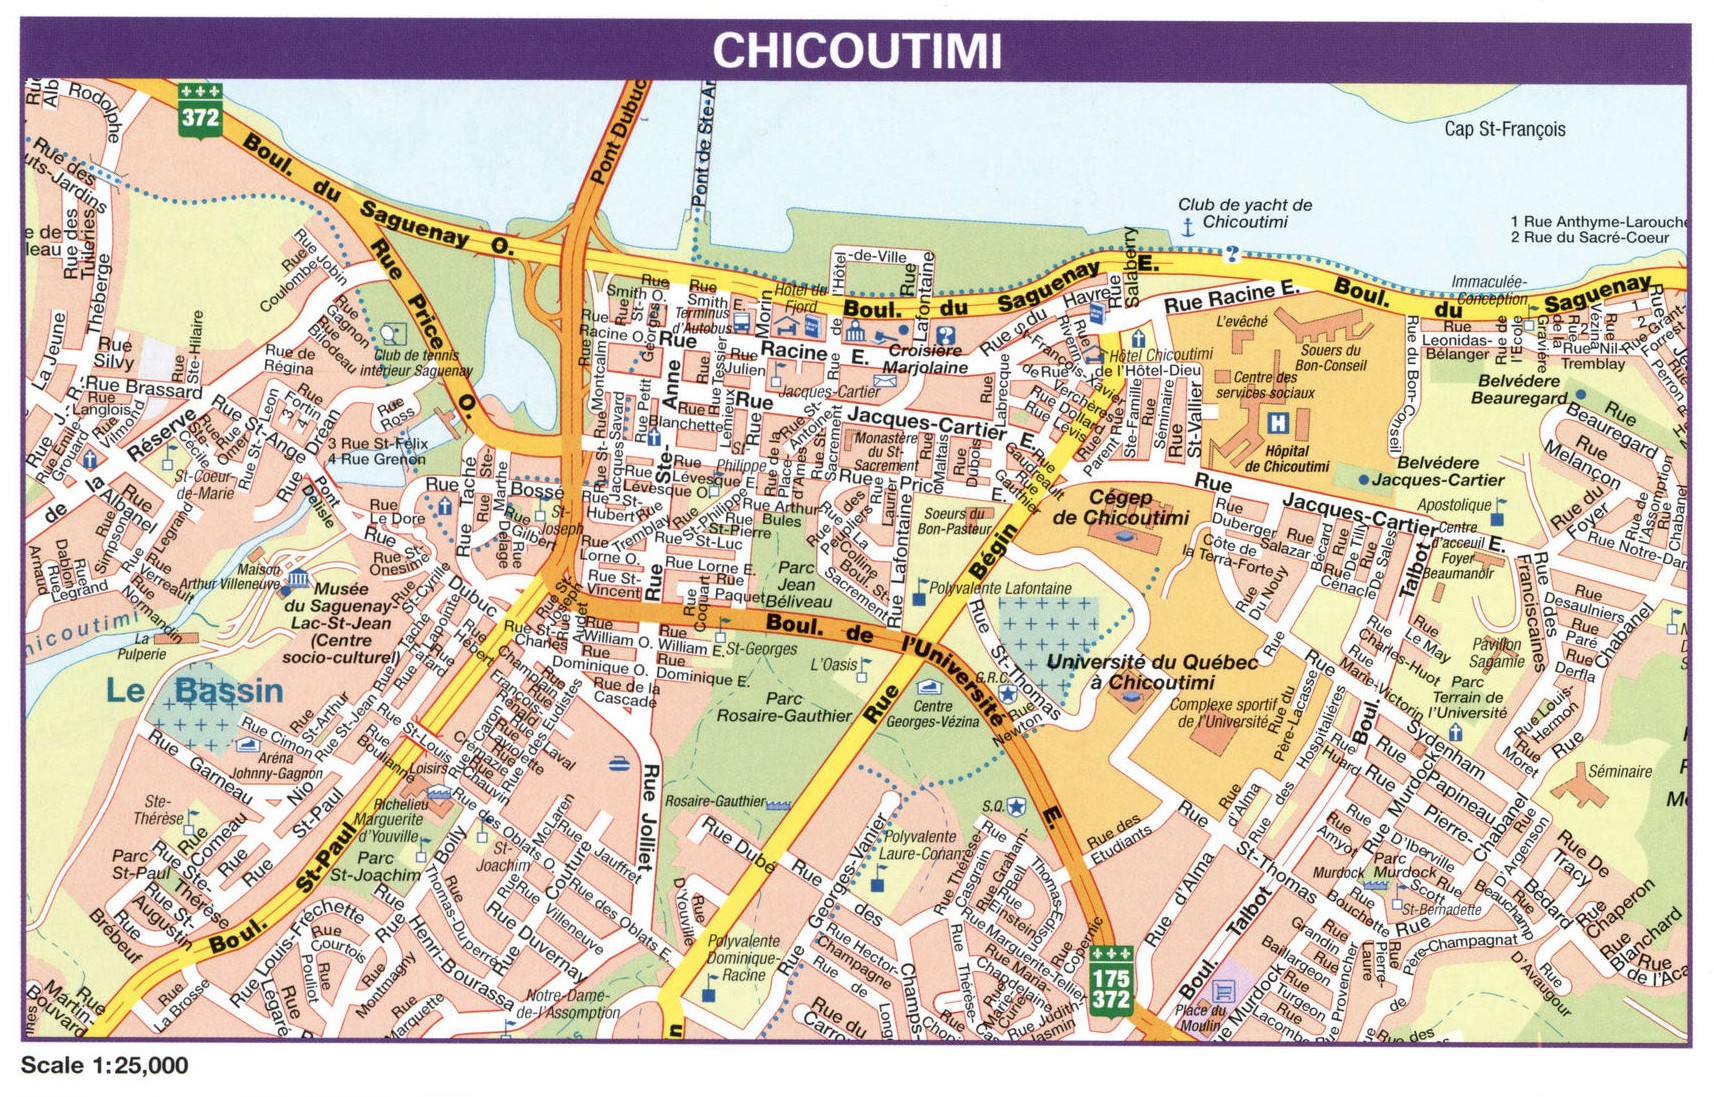 Chicoutimi city map